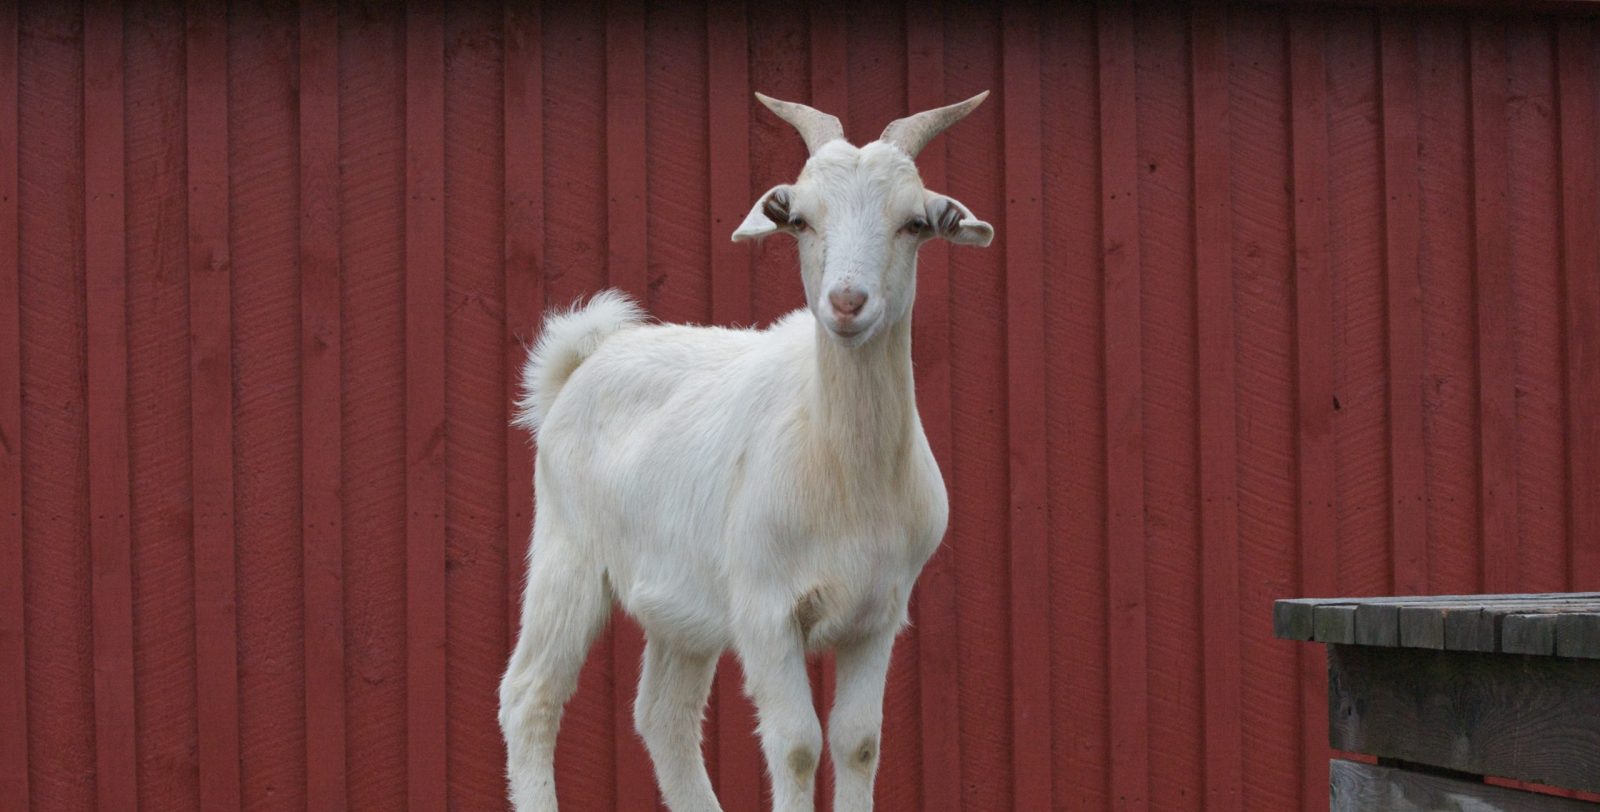 Jim goat at Farm Sanctuary